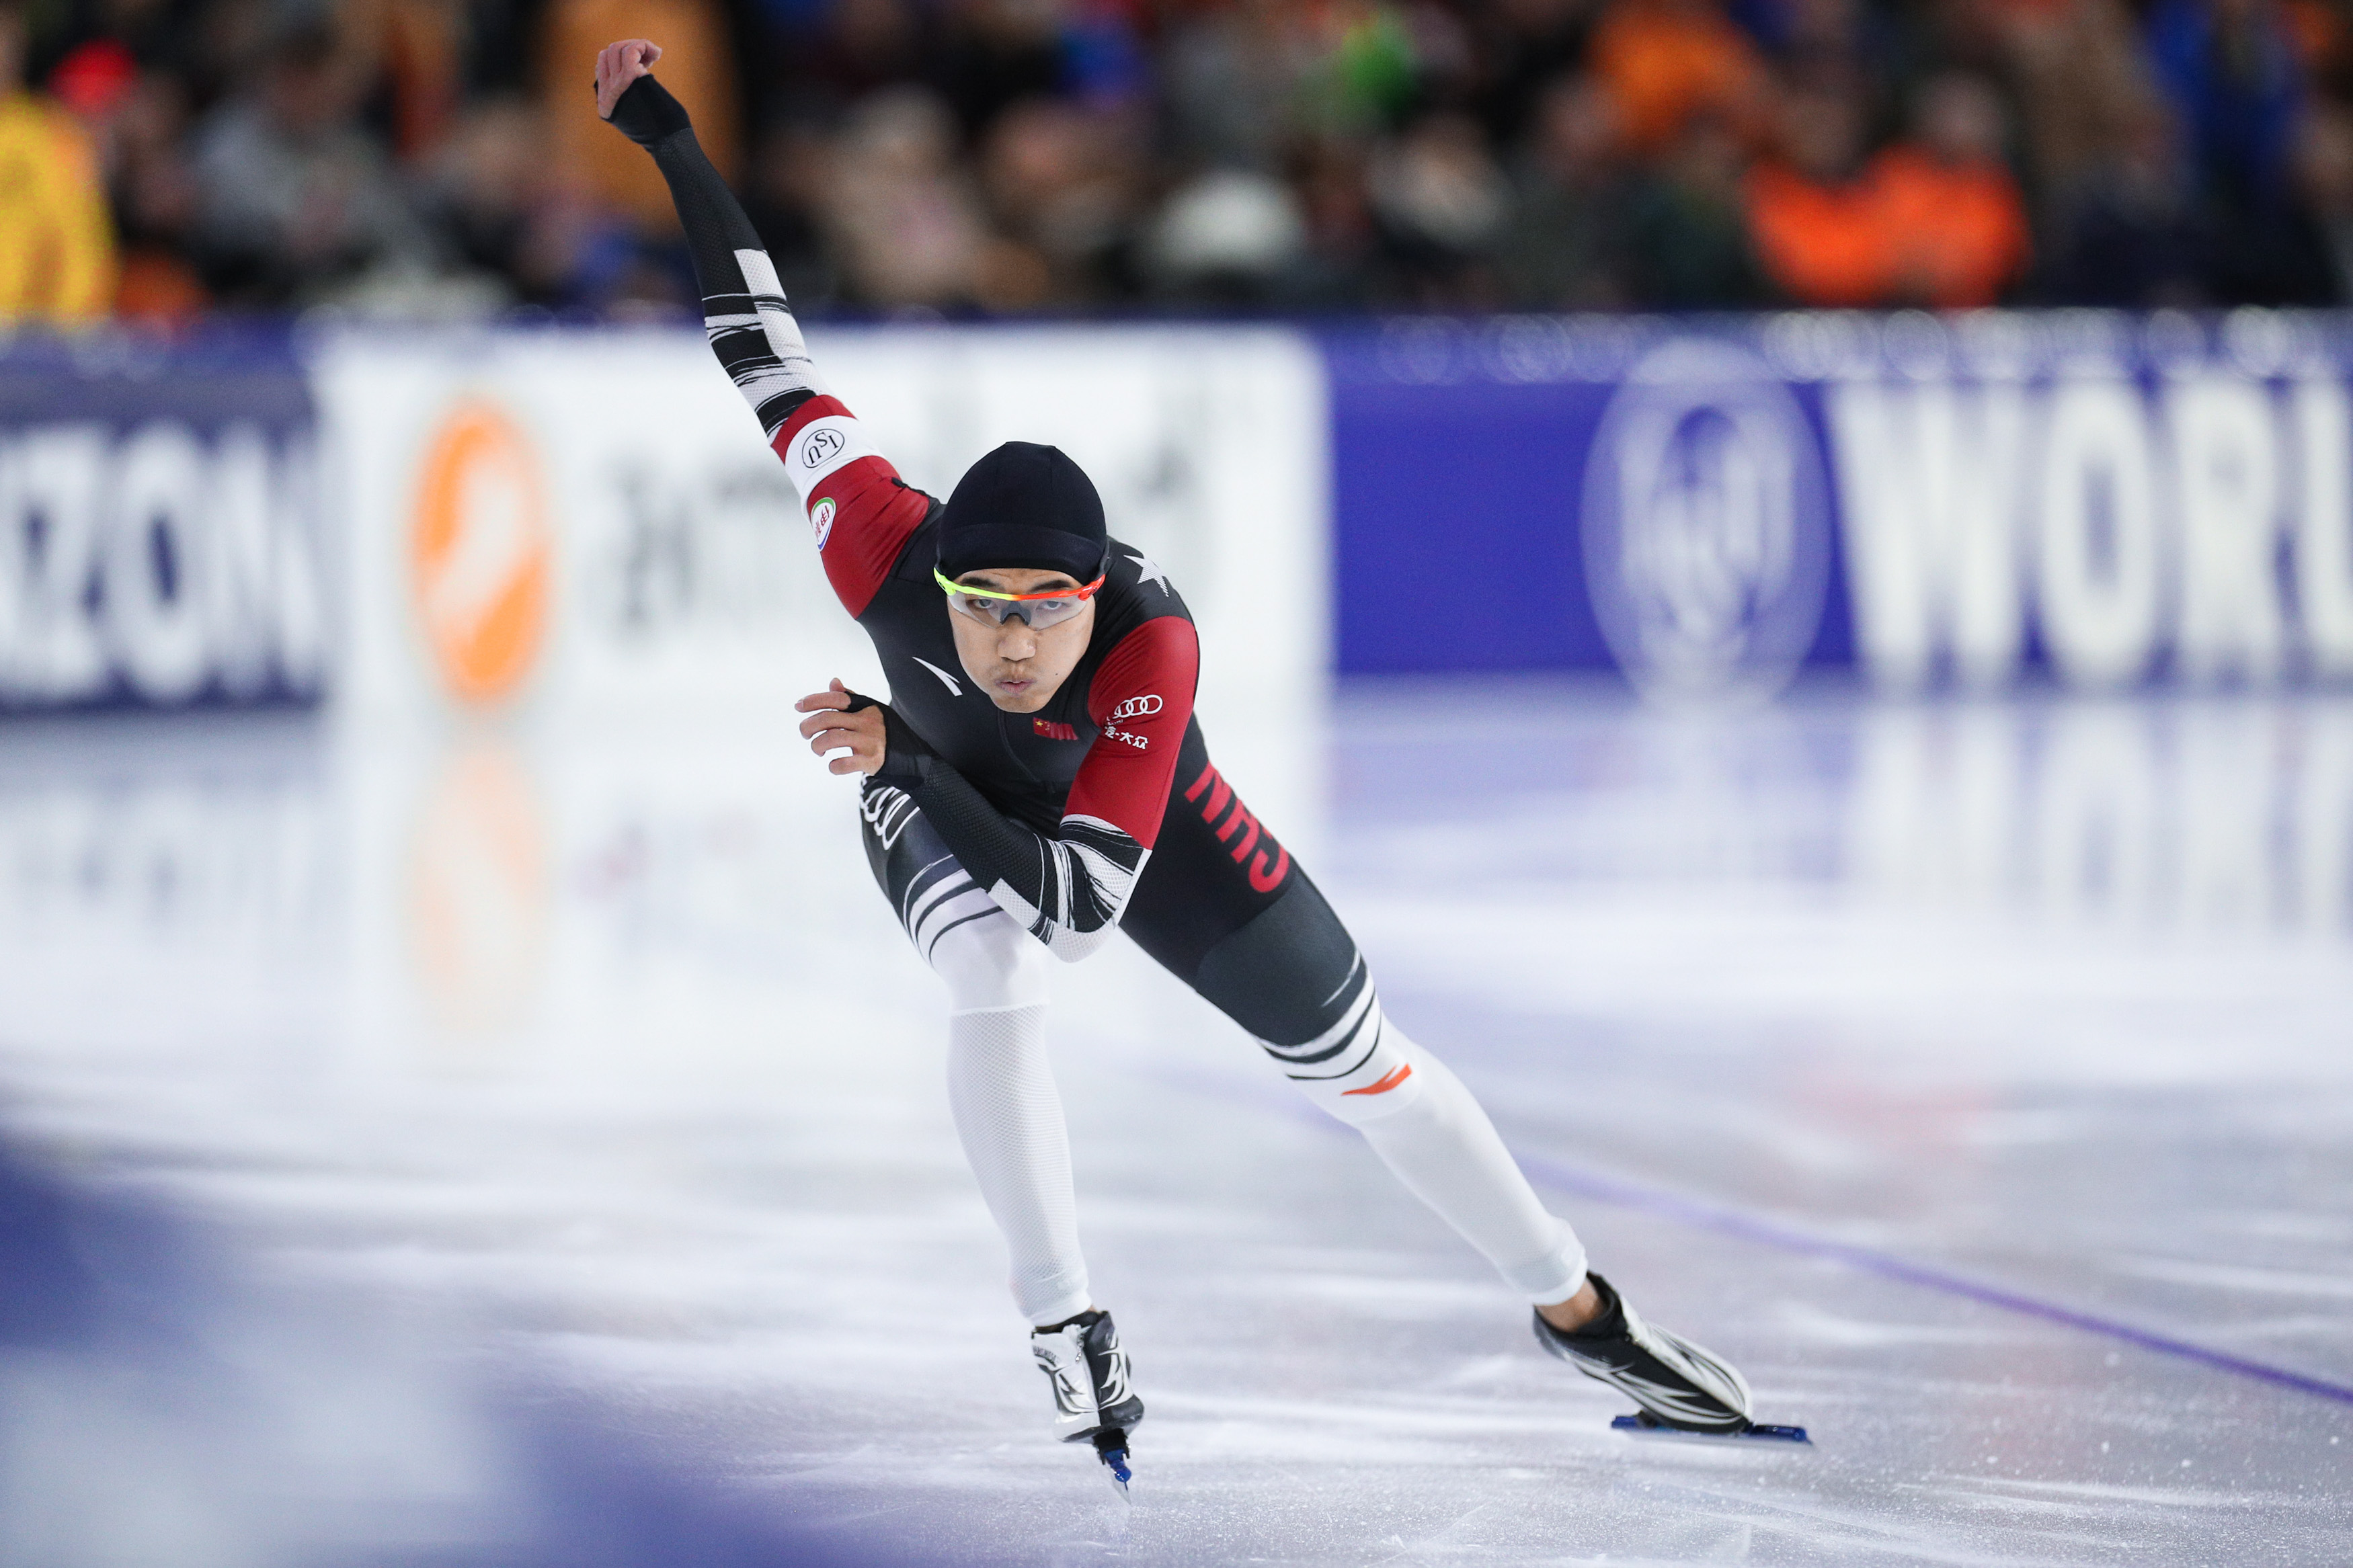 速度滑冰——世界杯总决赛:高亭宇获男子500米赛季第九名